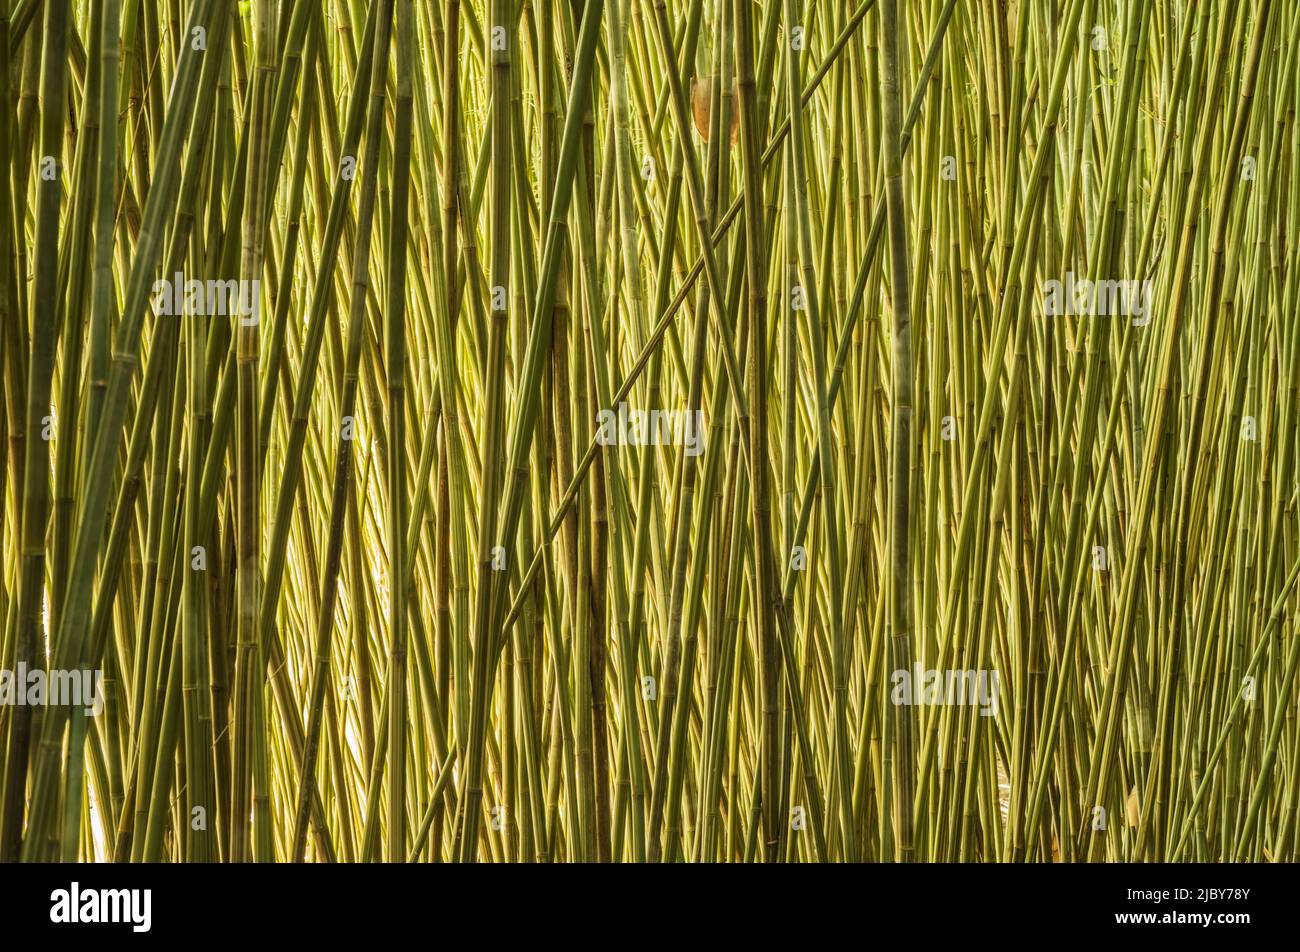 Mur de cannes en bambou géantes matures Banque D'Images